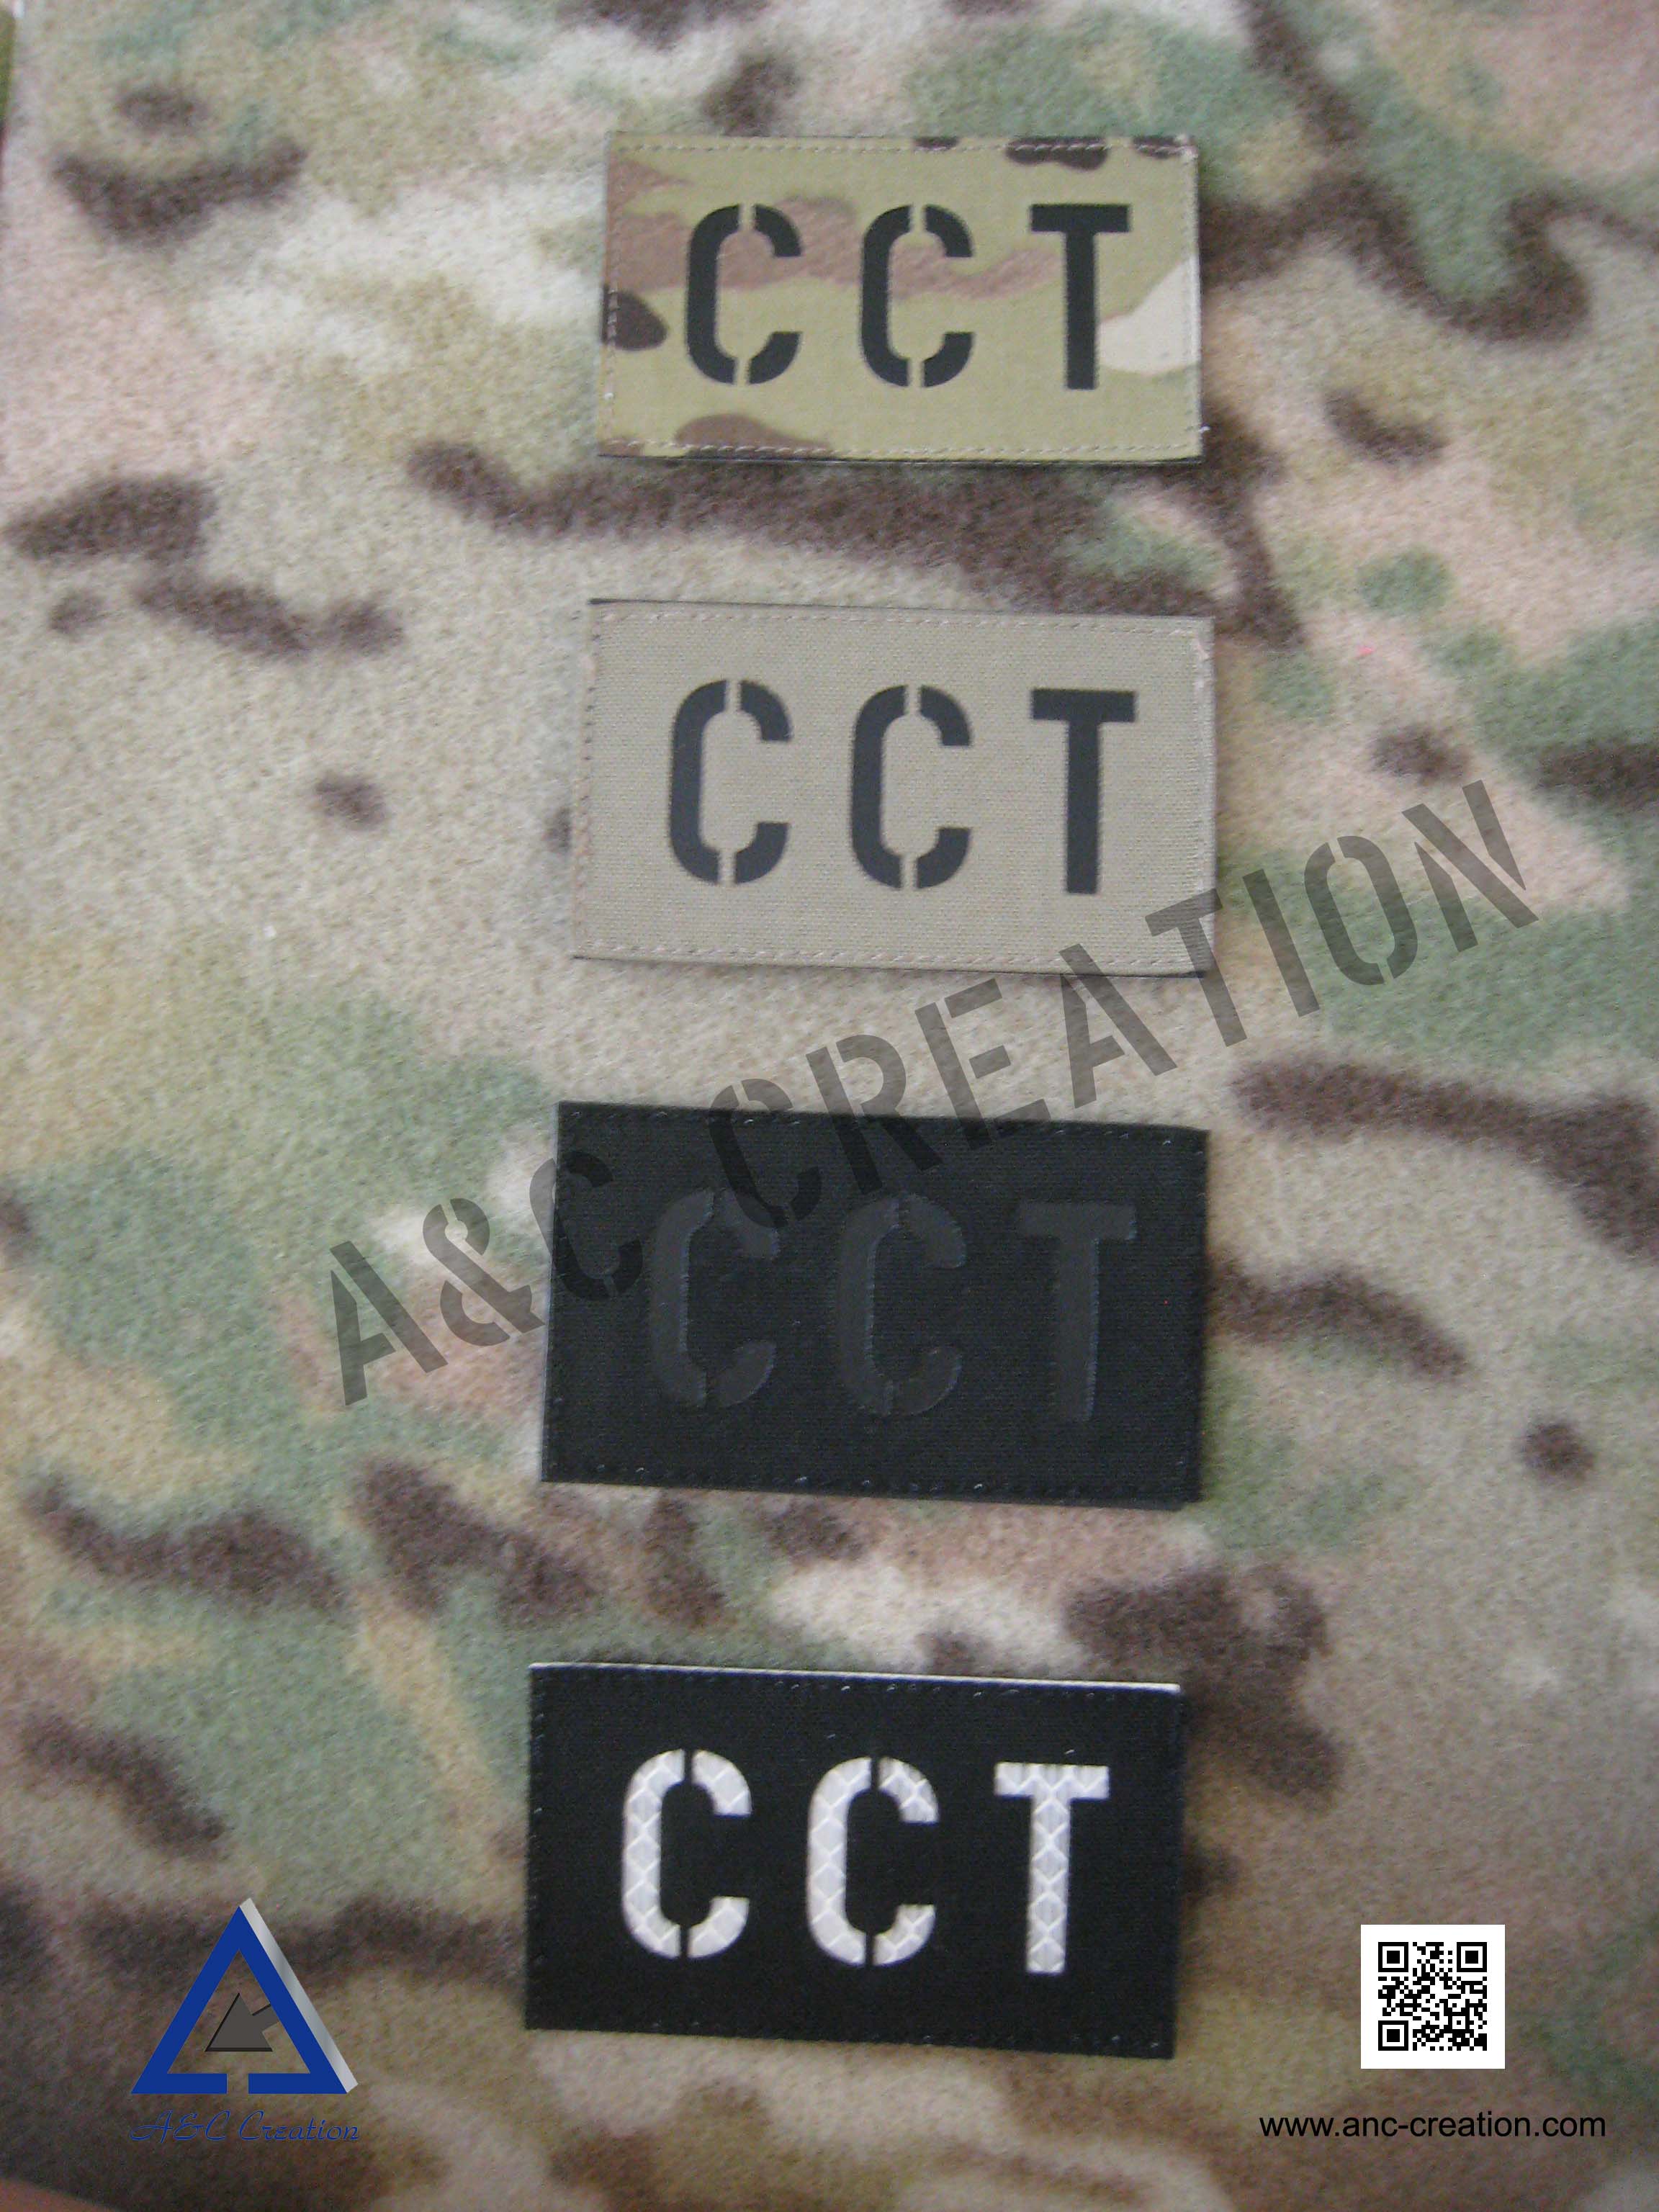 PM009Av-CCT 紅外線識別章 (戰術航空交通管制)